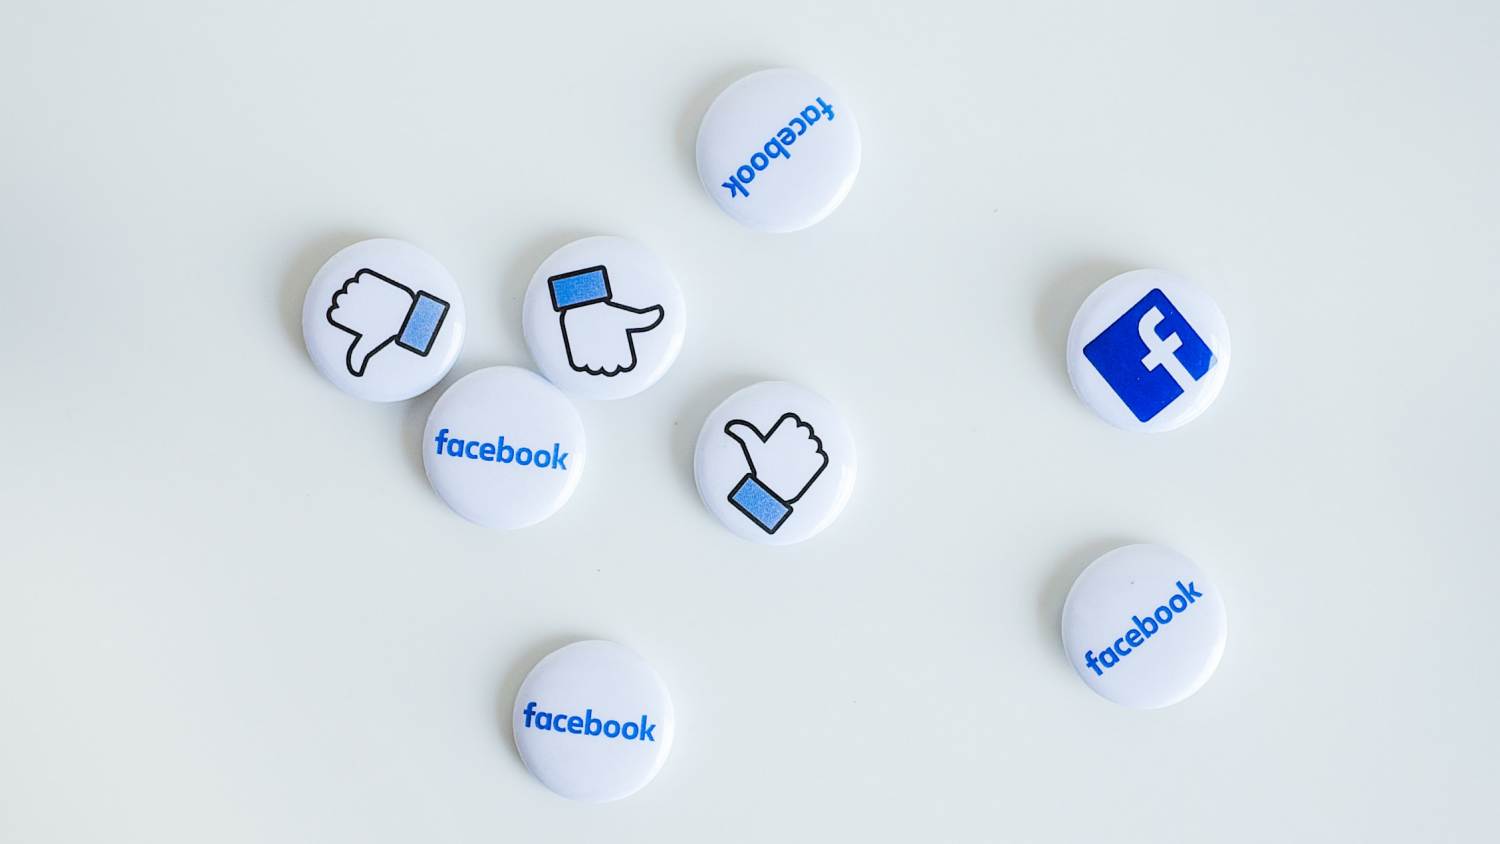 Facebook Mengemaskini Antaramuka Facebook Pages – Membuang “Likes”, Ganti Dengan “Followers”